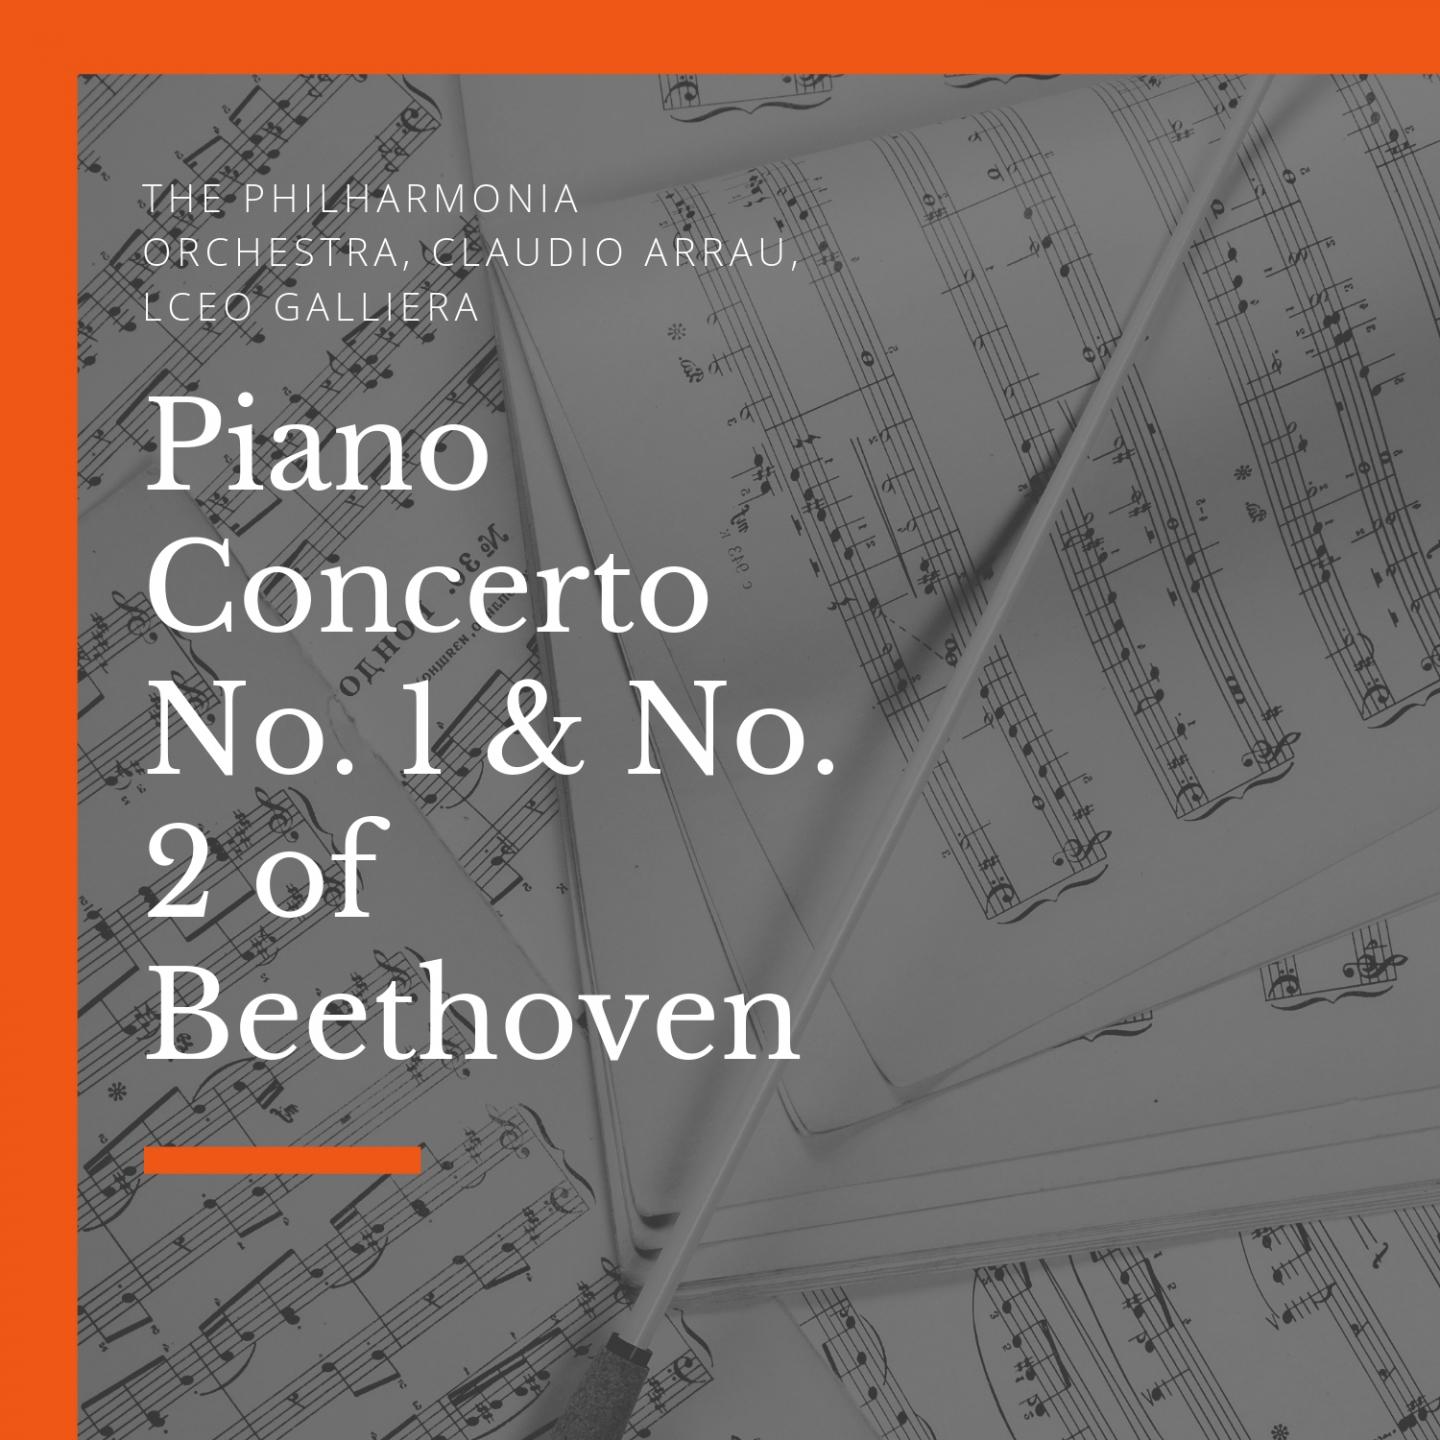 Piano Concerto No. 1, in C Major, Op. 15: I. Allegro con brio